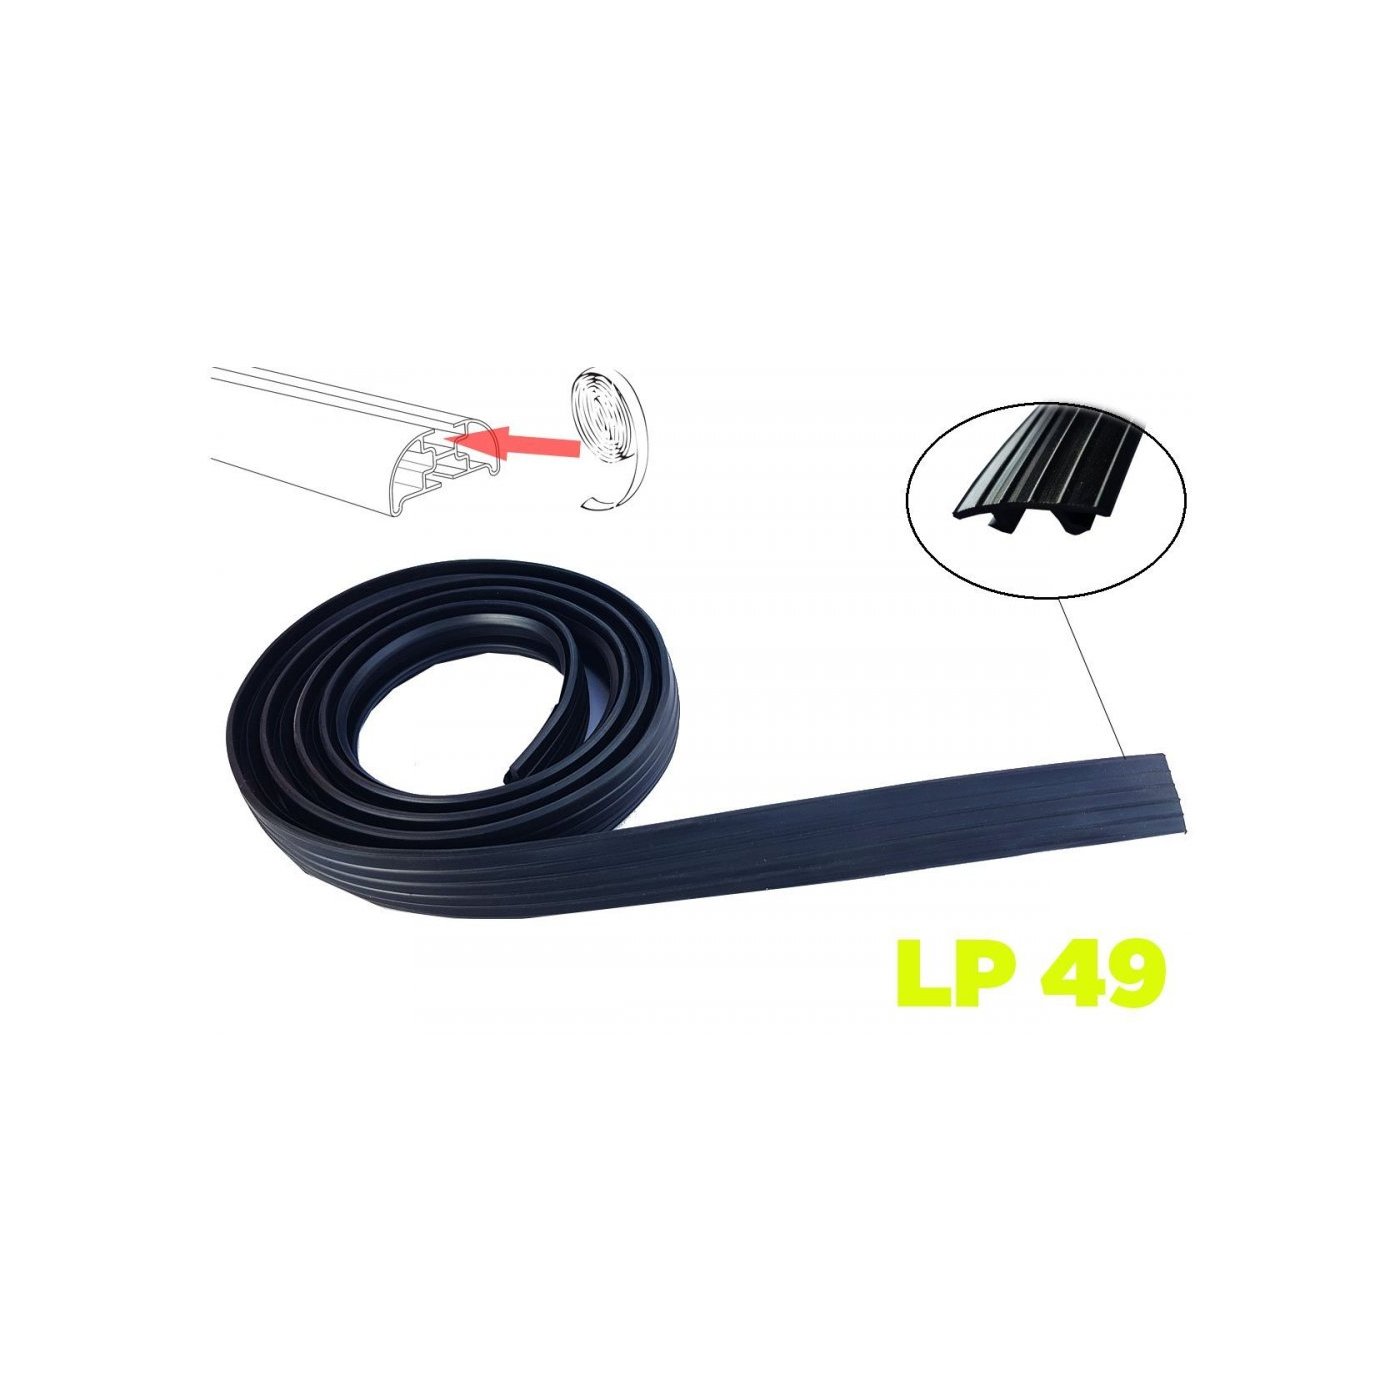 Csomagtartó kiegészítő tömítő gumi LaPrealpina LP49